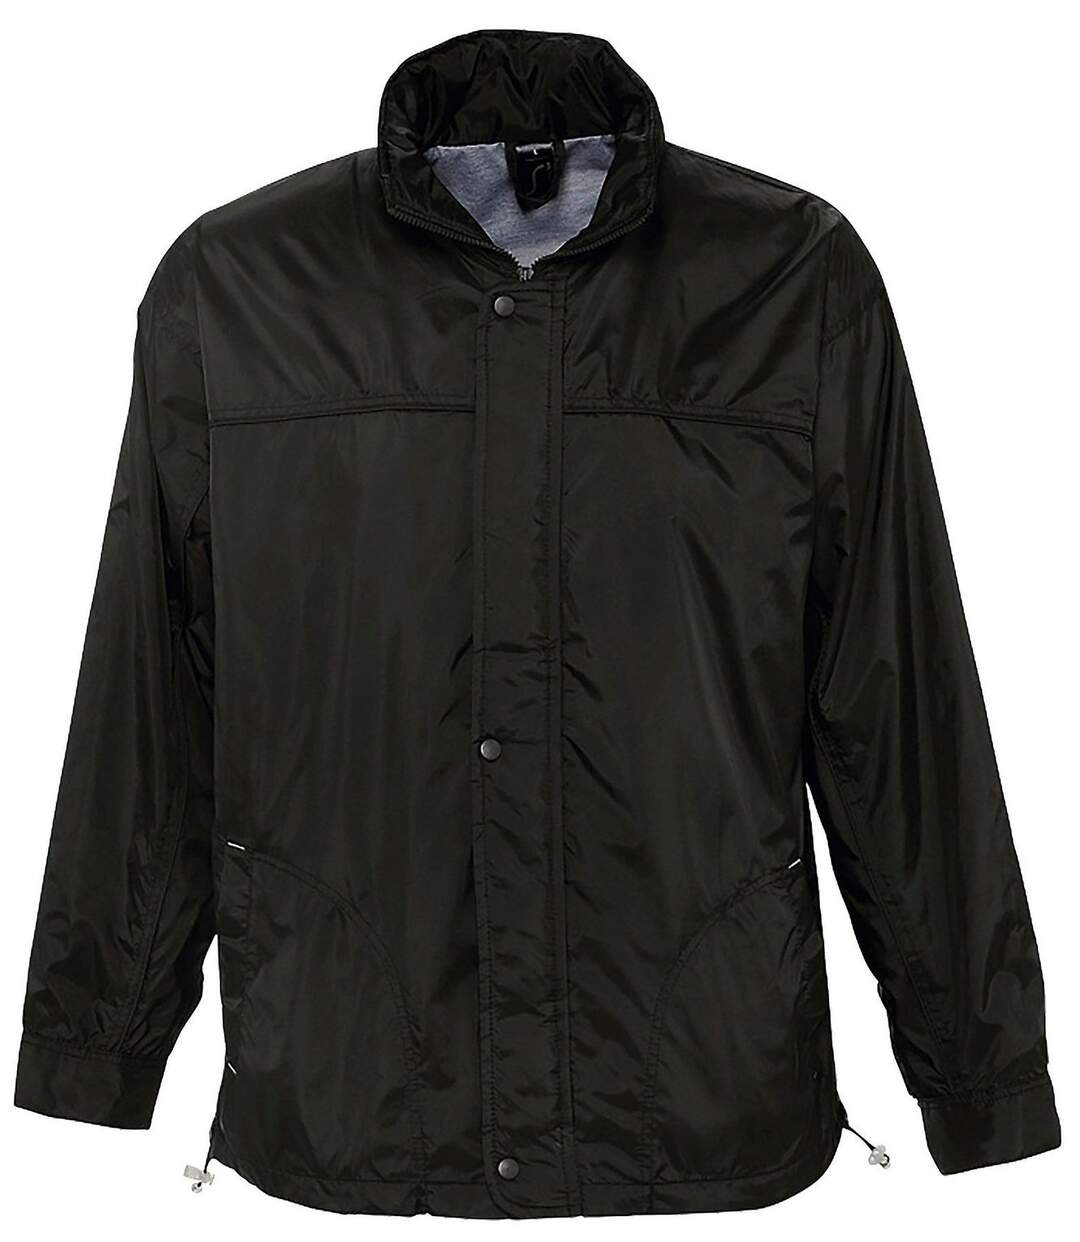 Veste coupe-vent imperméable doublé jersey - 46000 - noir - mixte homme femme